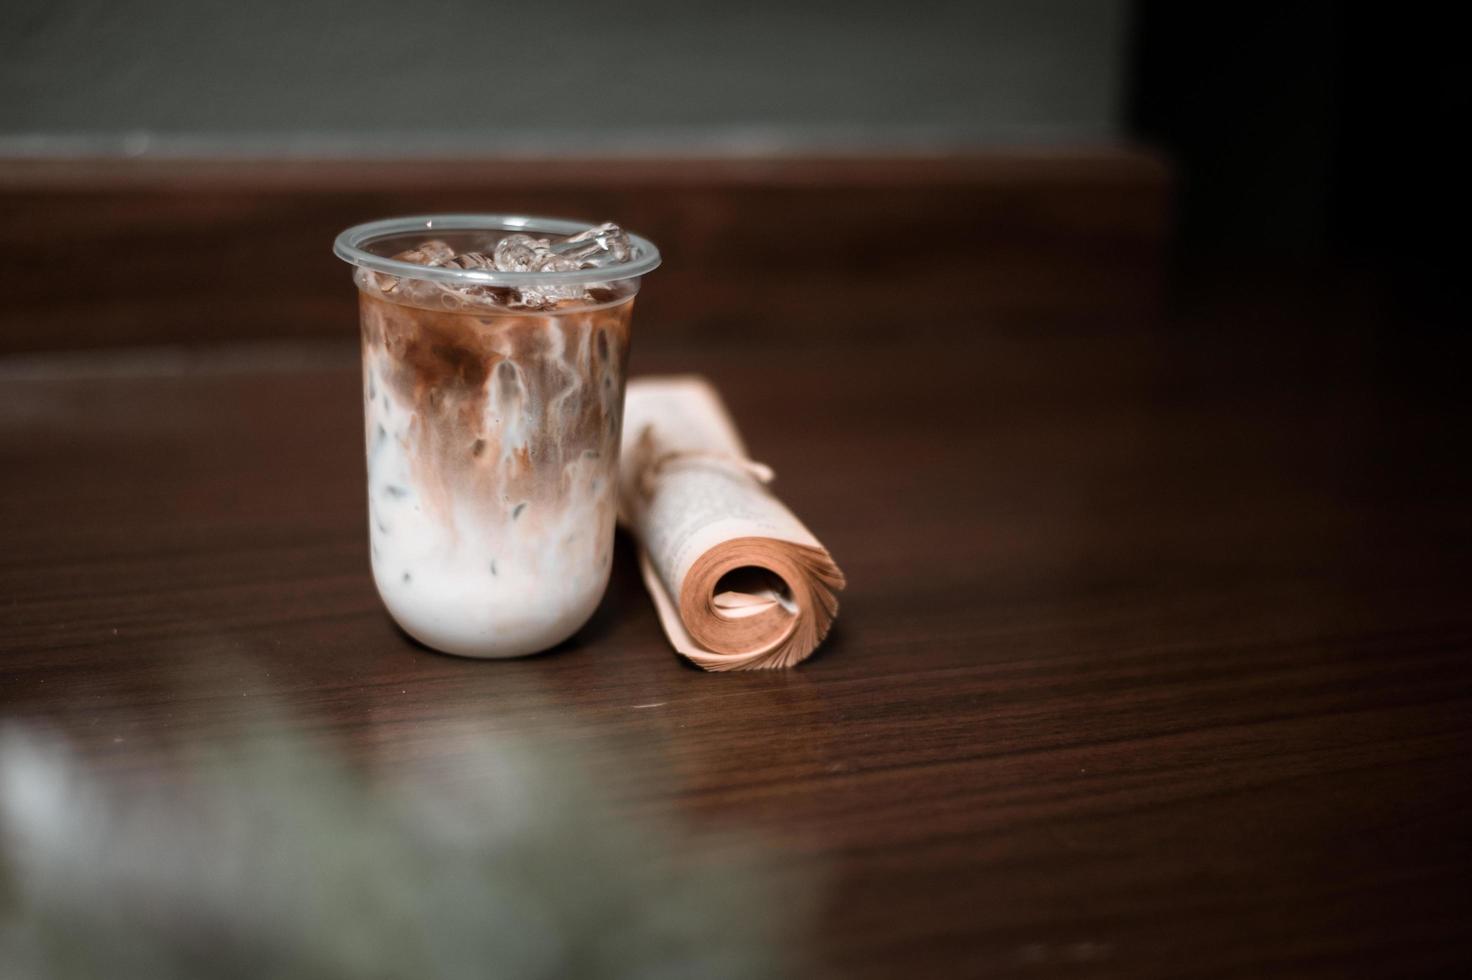 glas kaffe med mjölk på bordet foto